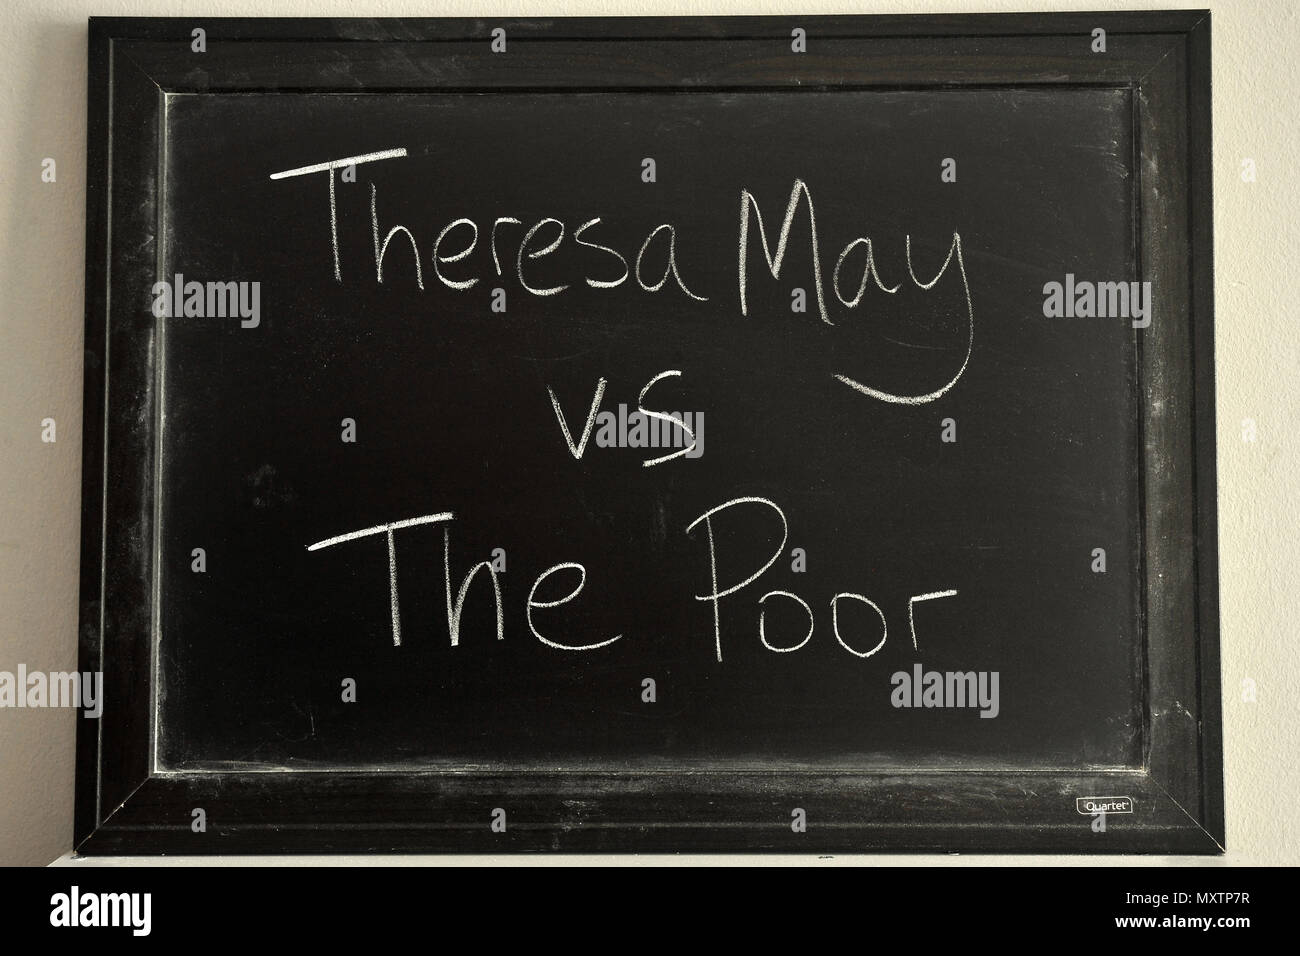 Teresa Mayo vs los pobres escritas en blanco tiza en una pizarra. Foto de stock